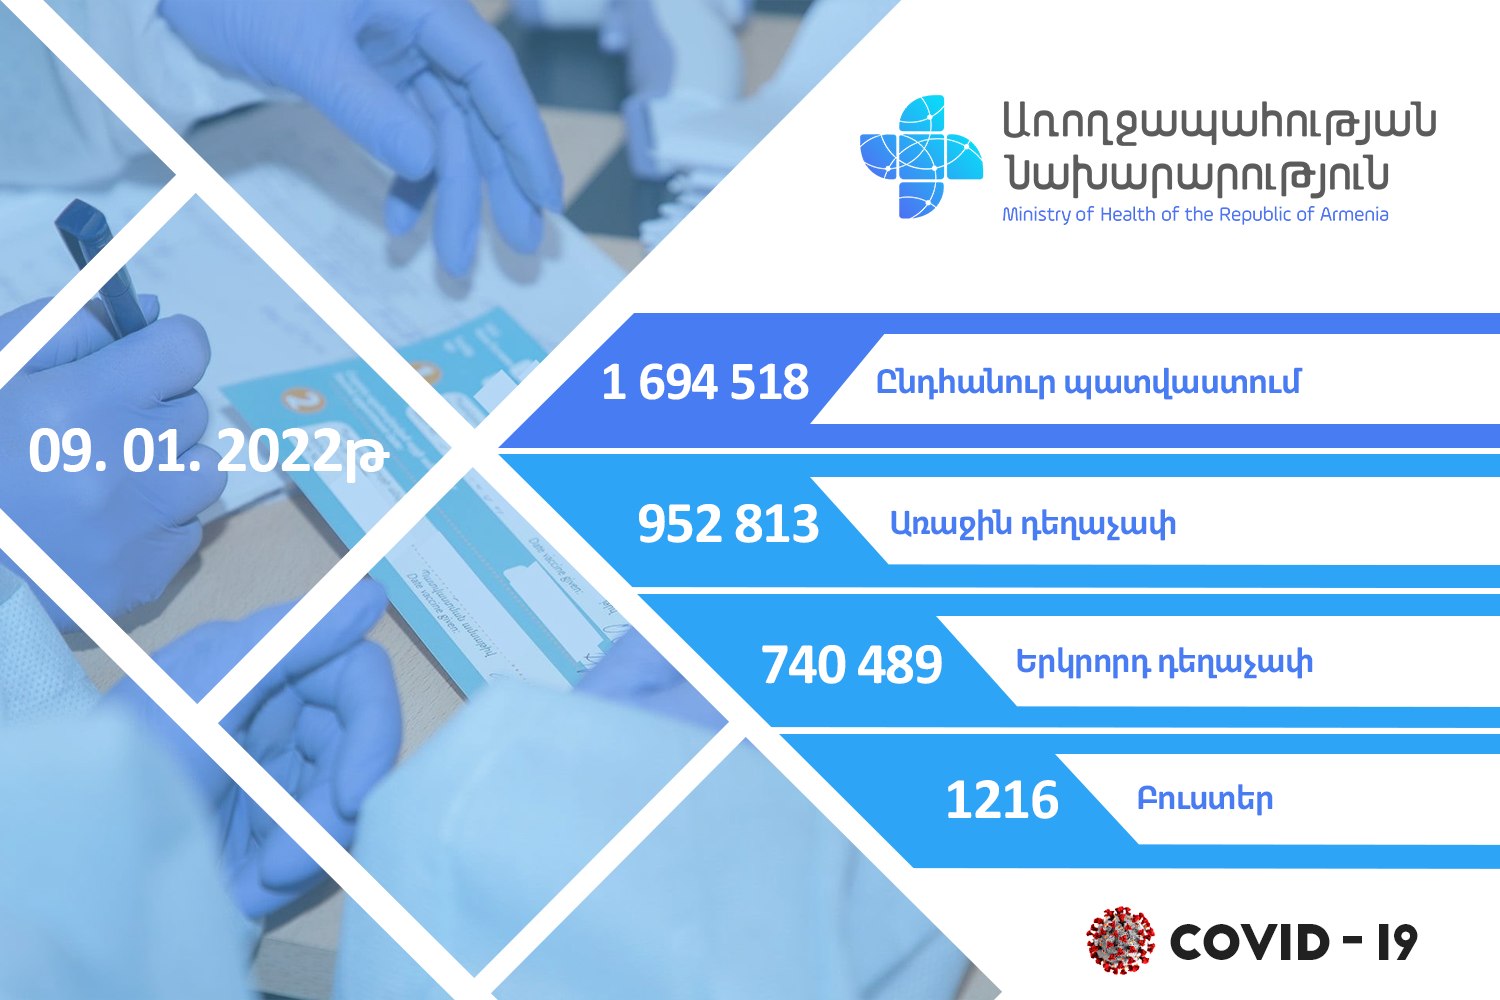 В Армении против COVID-19 осуществлена вакцинация 1 694 518 человек